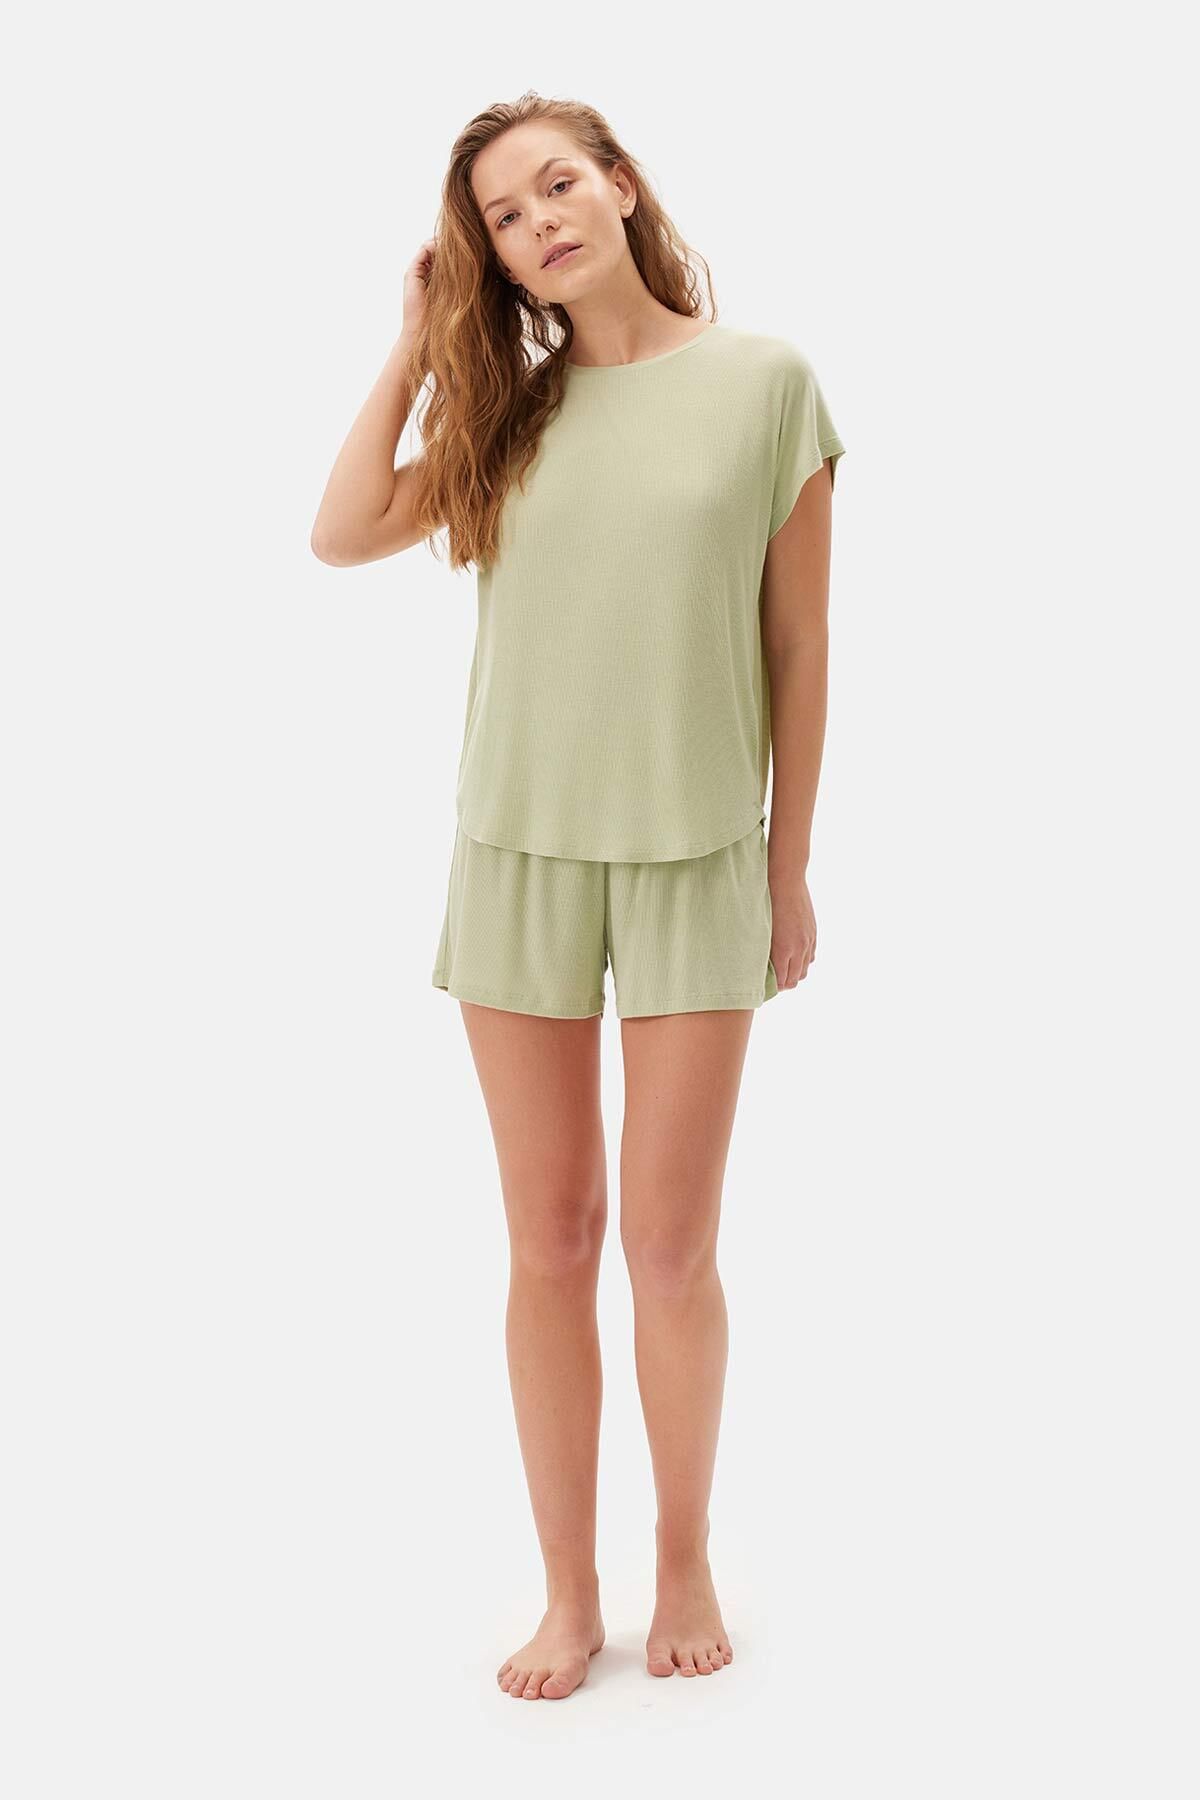 Dagi Açık Yeşil Düşük Kol Tişört Şort Pijama Takımı